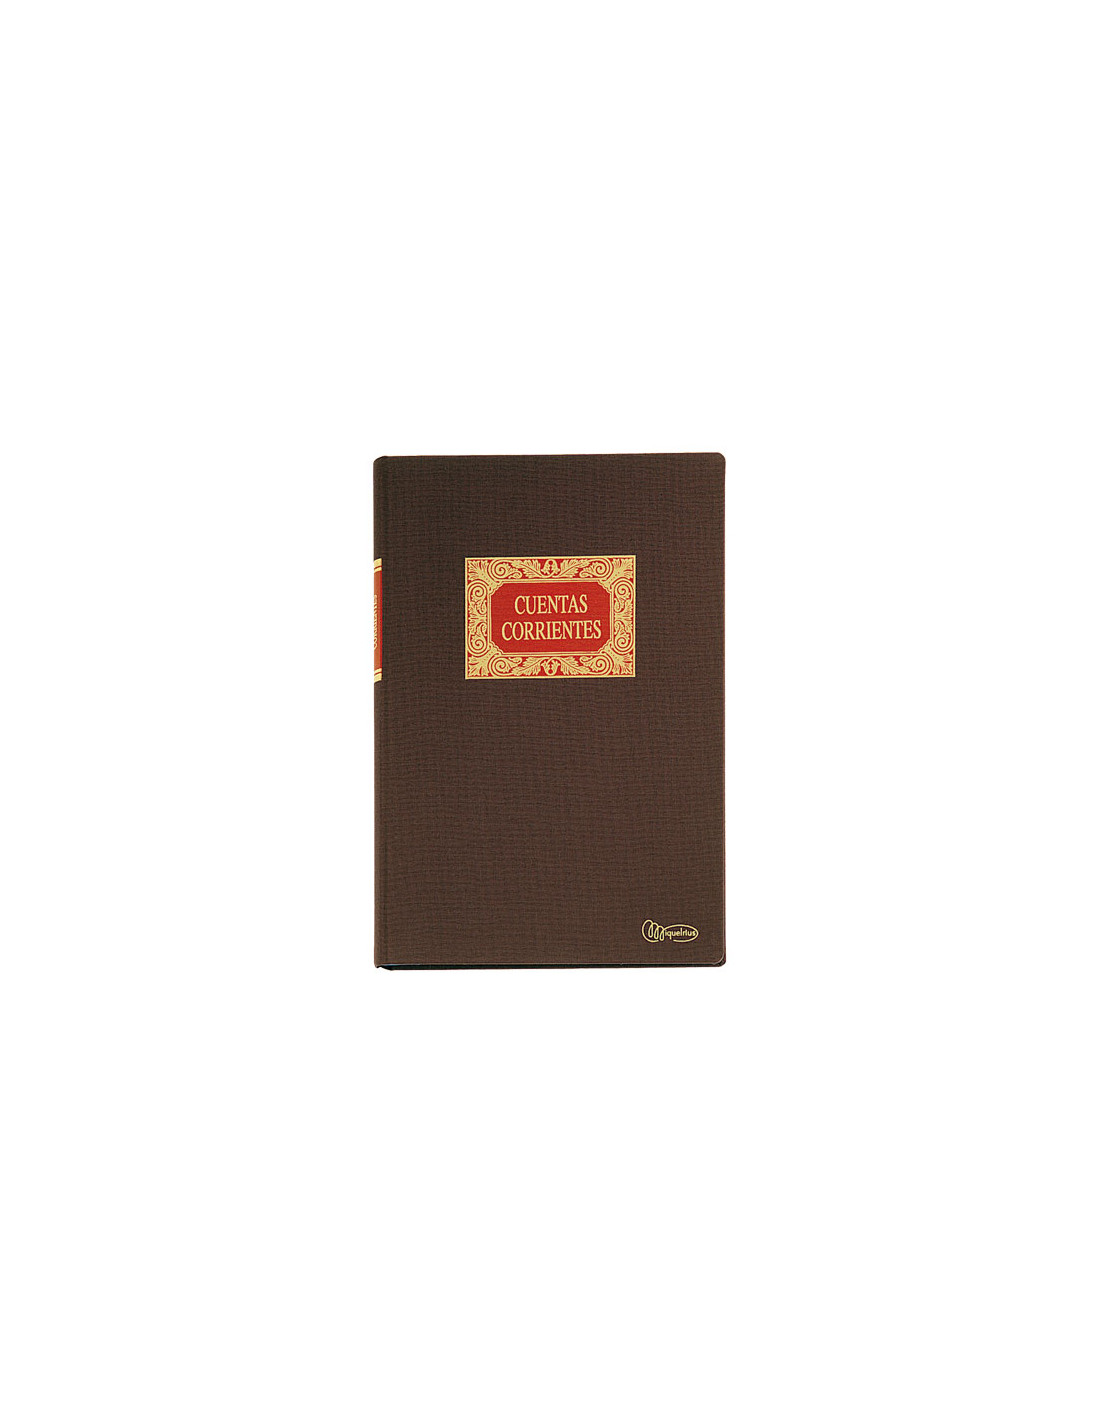 Libro de cuentas corrientes Folio, 100 hojas Miquelrius en